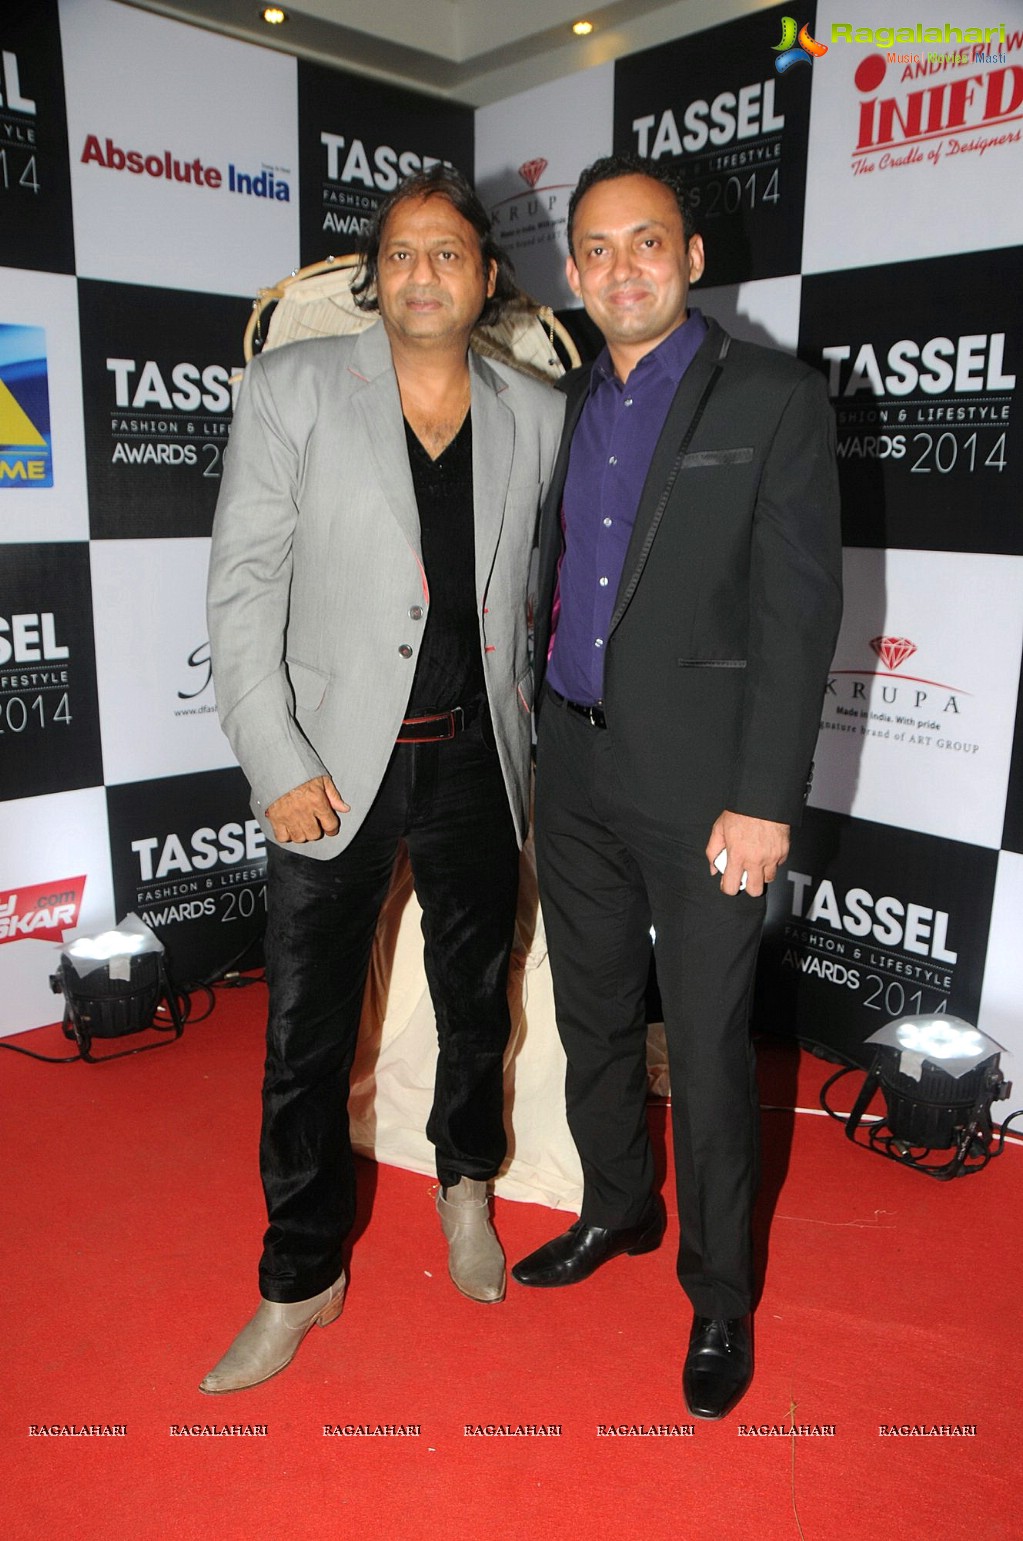 Tassel Fashion & Lifestyle Awards 2014